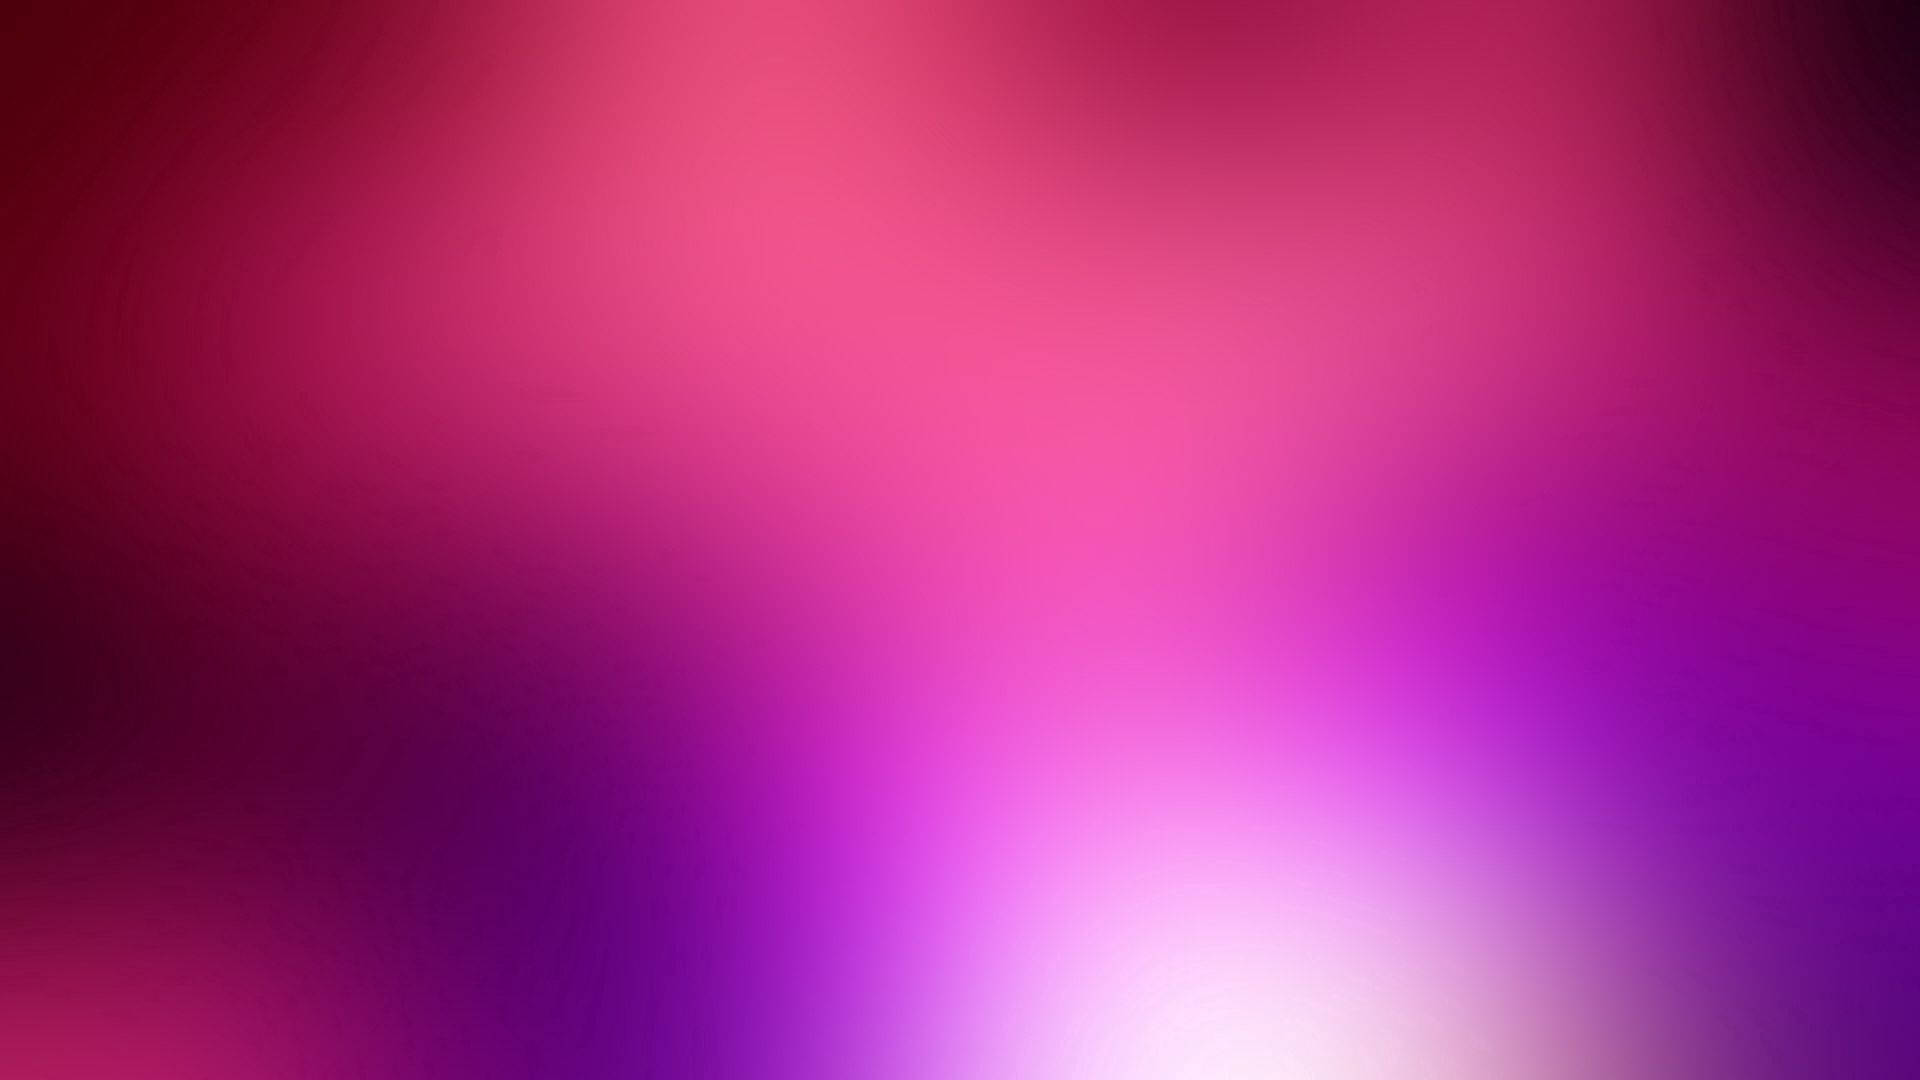 Bright Blurred Pink Background